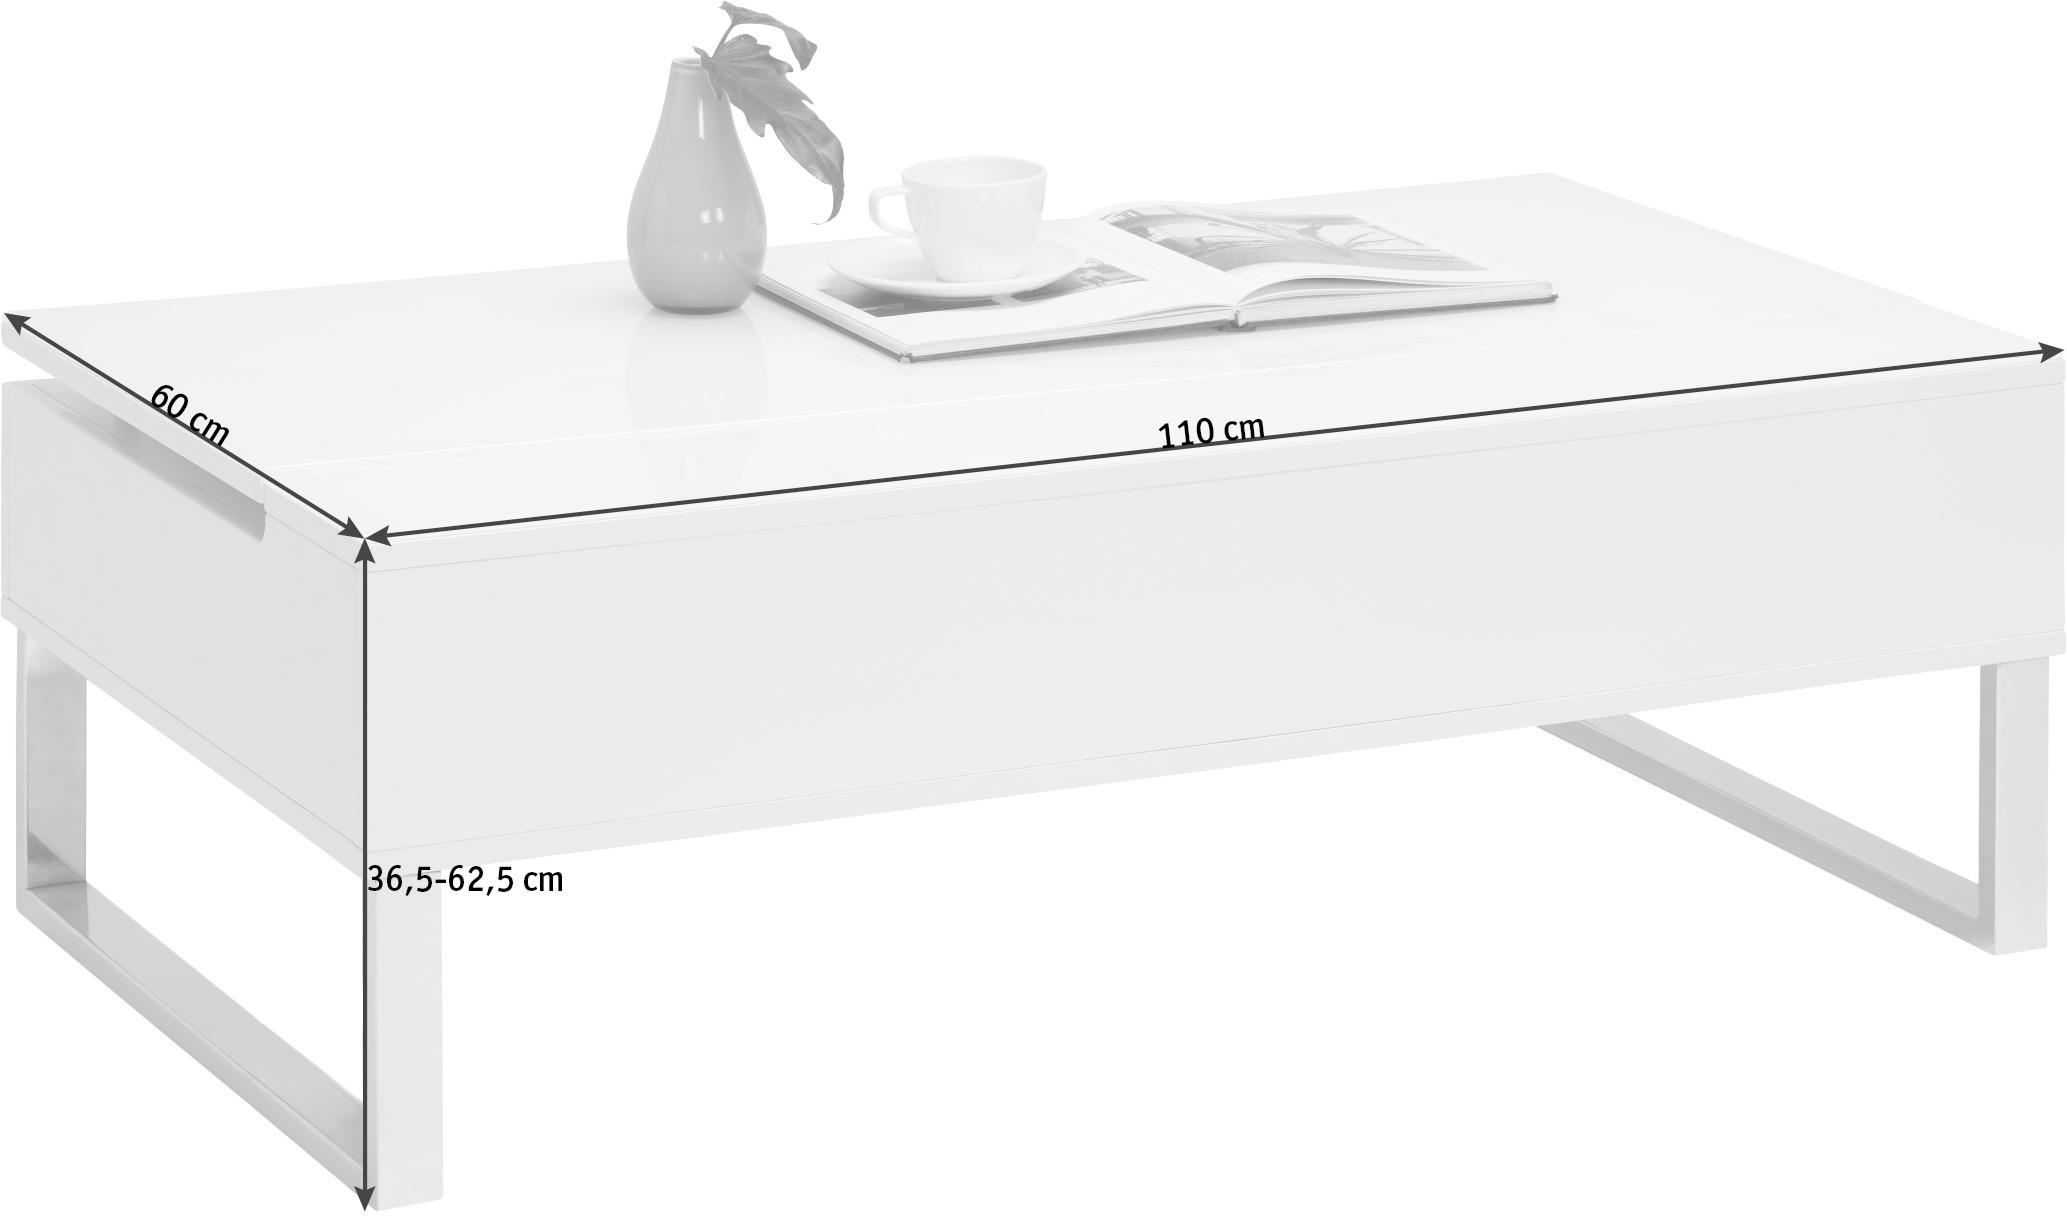 COUCHTISCH rechteckig Weiß 110/60/36,5-62,5 cm  - Silberfarben/Weiß, Design, Glas/Metall (110/60/36,5-62,5cm) - Xora